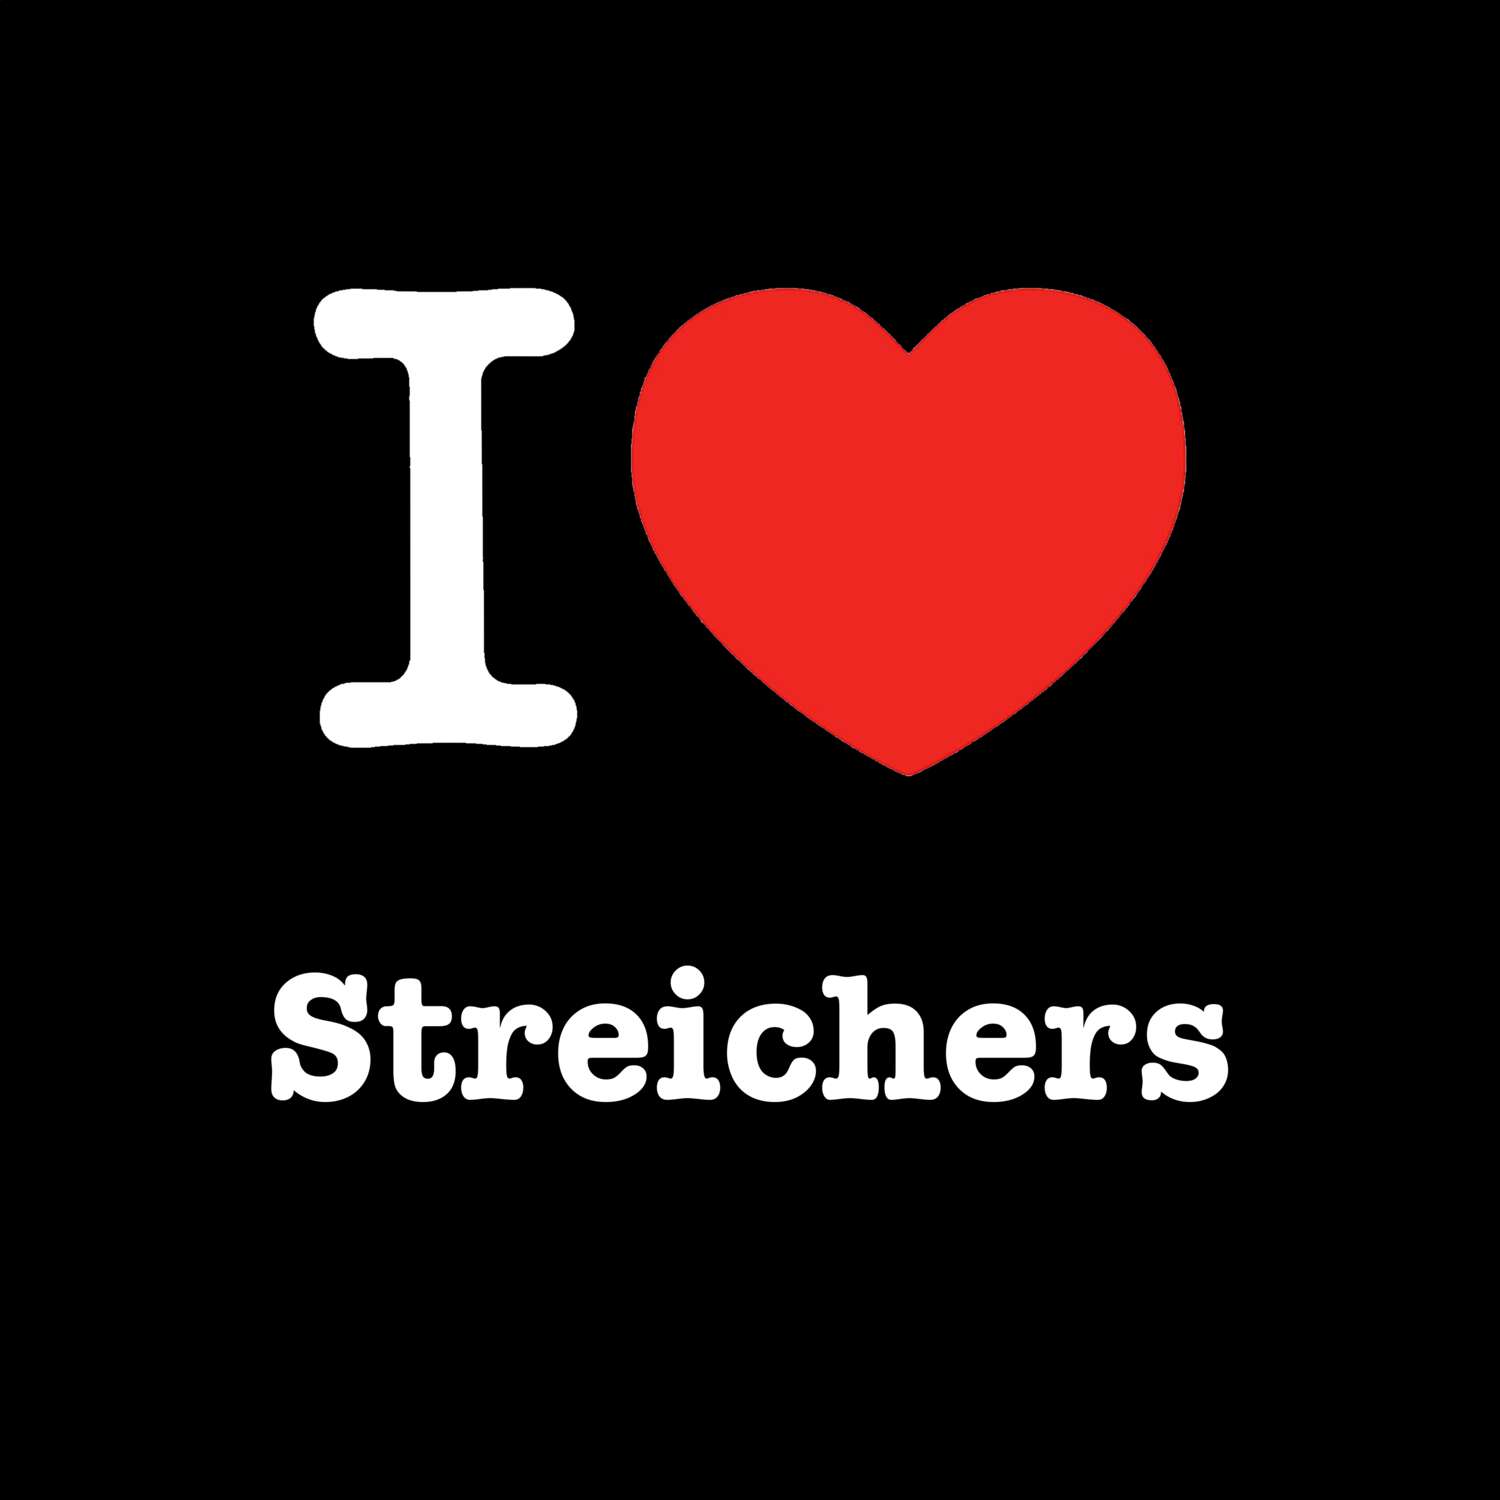 Streichers T-Shirt »I love«